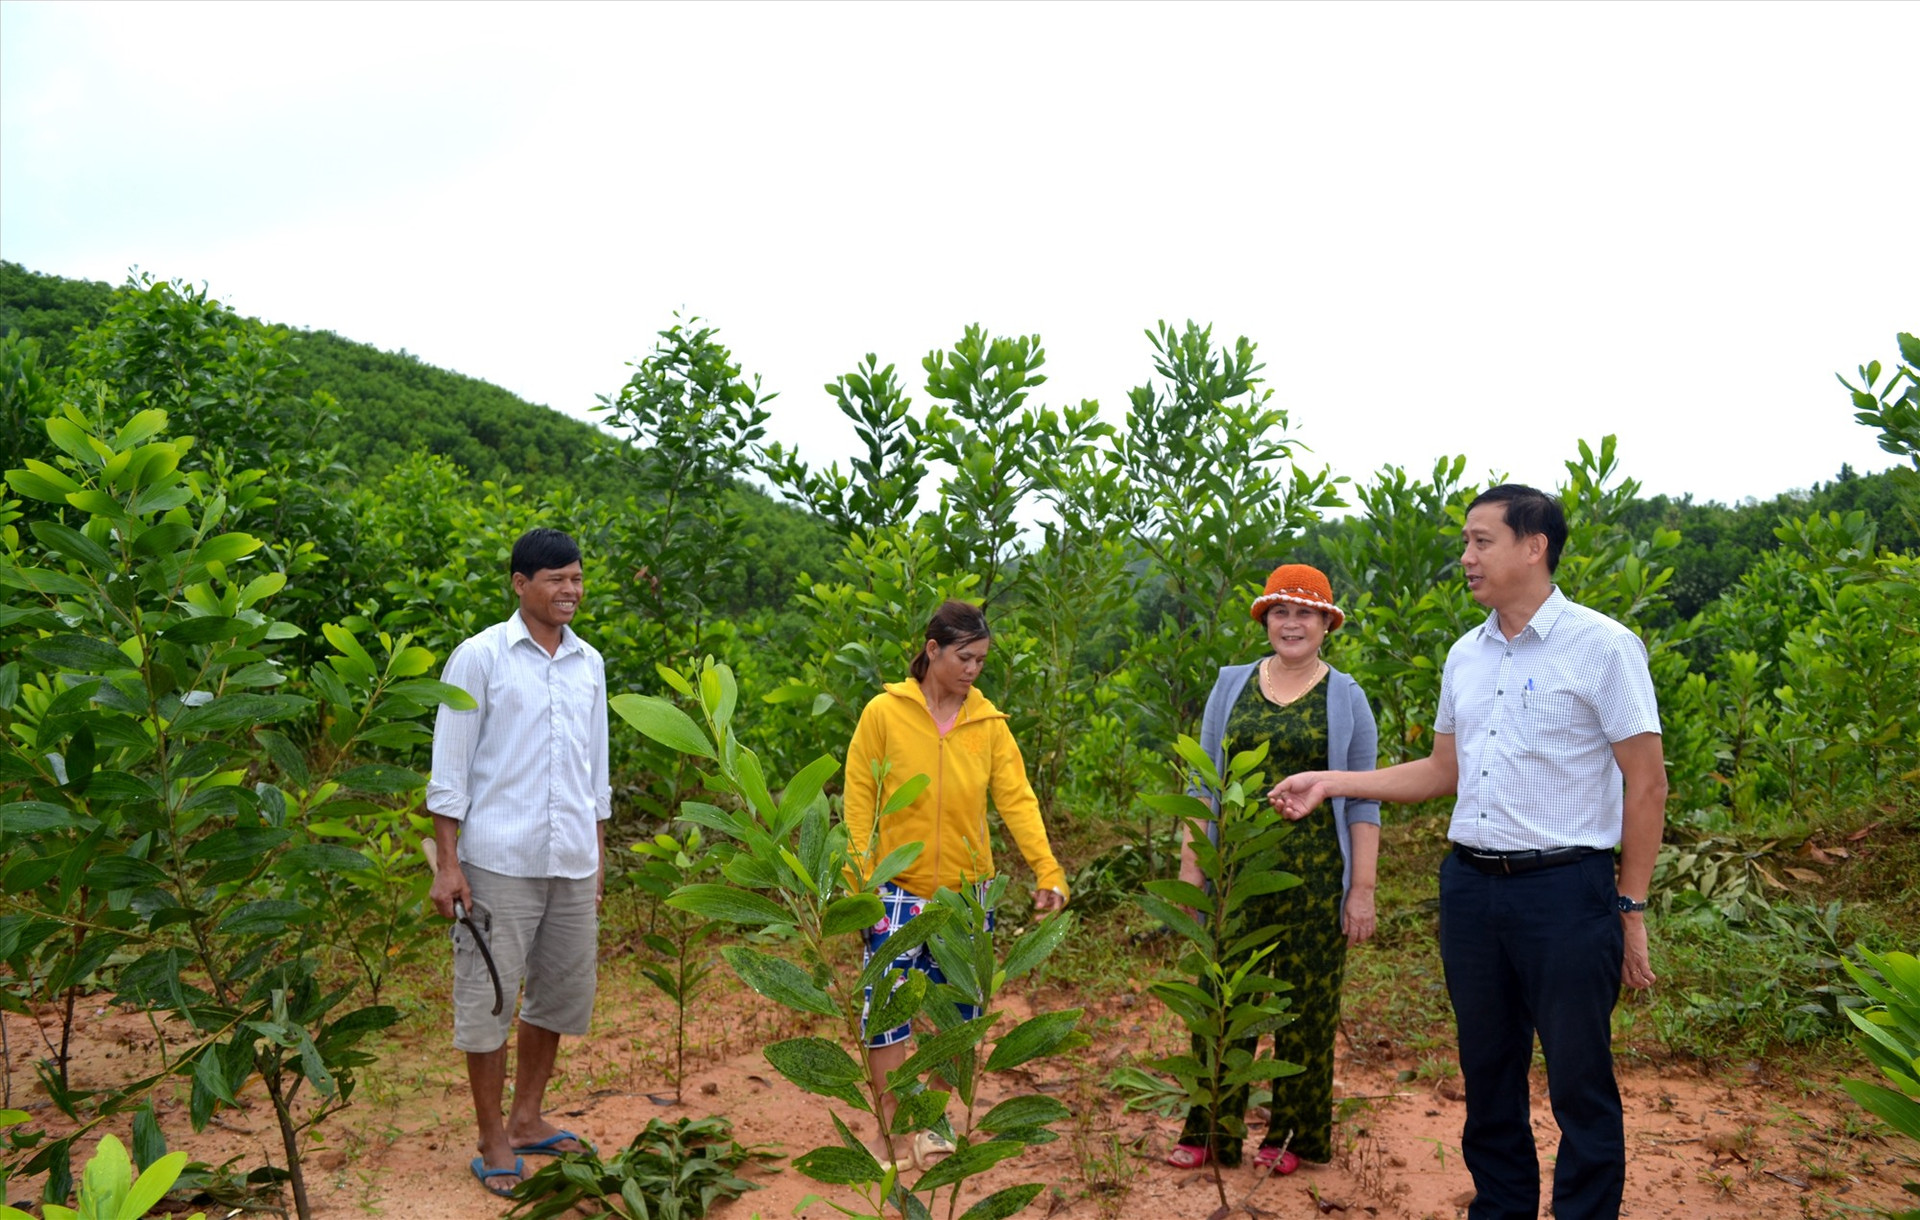 Hộ nghèo ở huyện Bắc Trà My tiếp cận vốn chính sách phát triển kinh tế rừng hiệu quả, thoát nghèo bền vững. Ảnh: VIỆT NGUYỄN